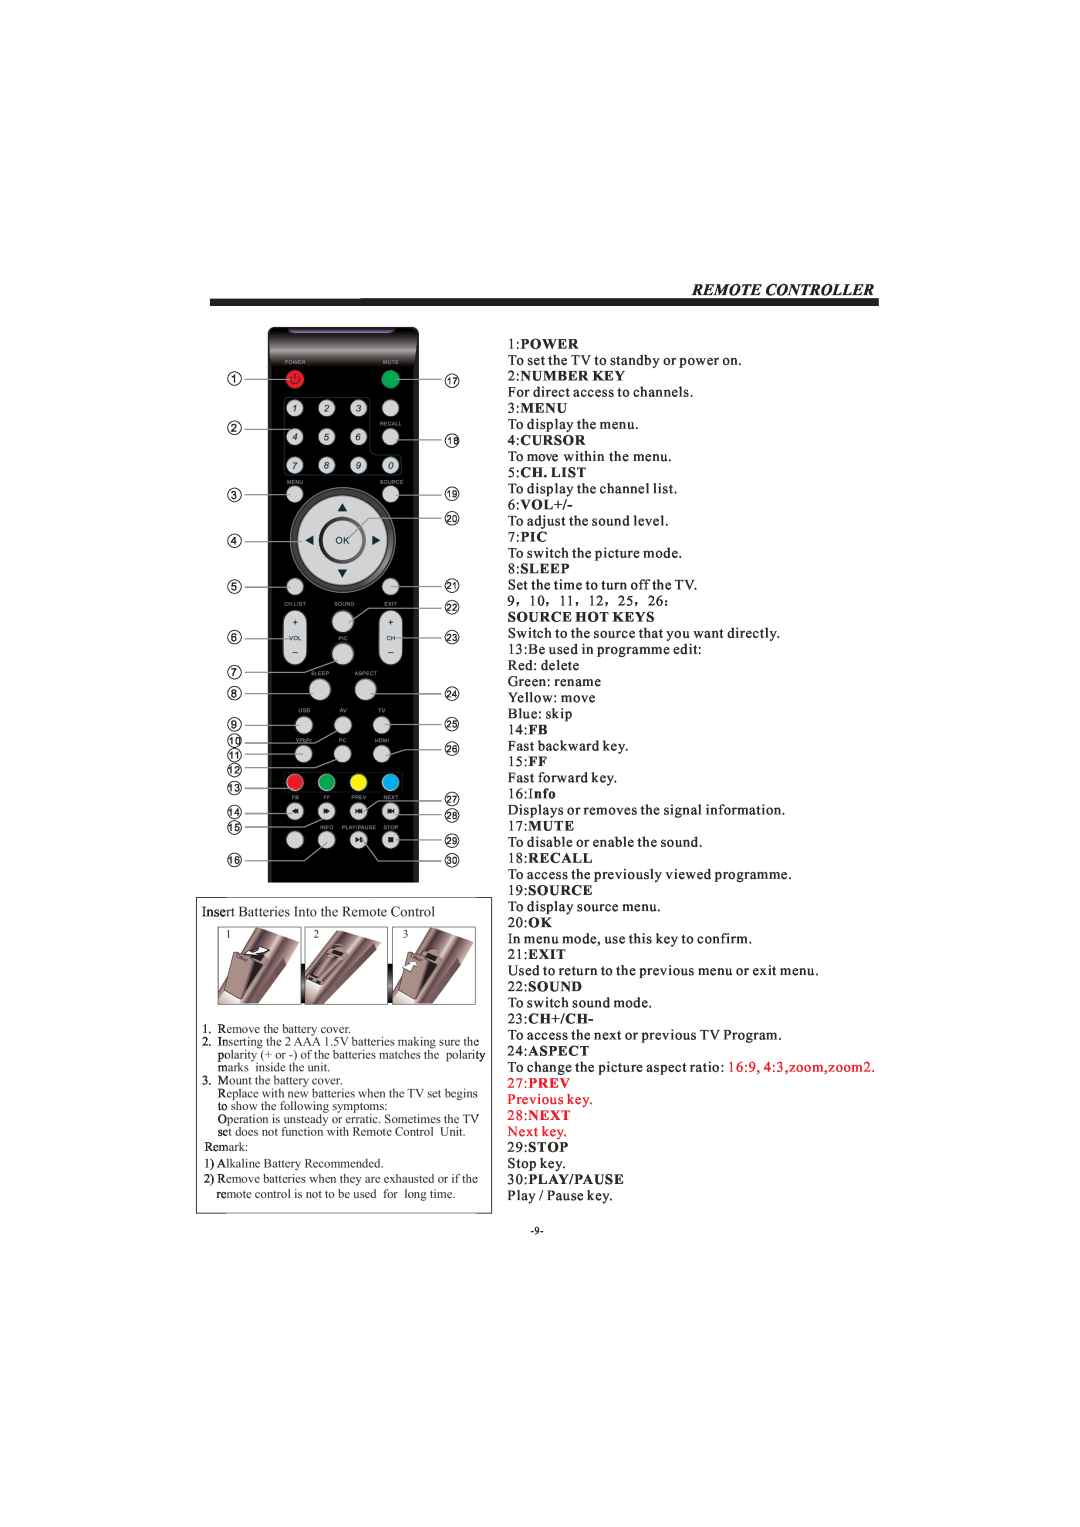 Haier LE24C430, LE22C430, LE19C430 owner manual Remote Controller, 1PO ER, 2NUMBER KEY, Source Hot Keys 